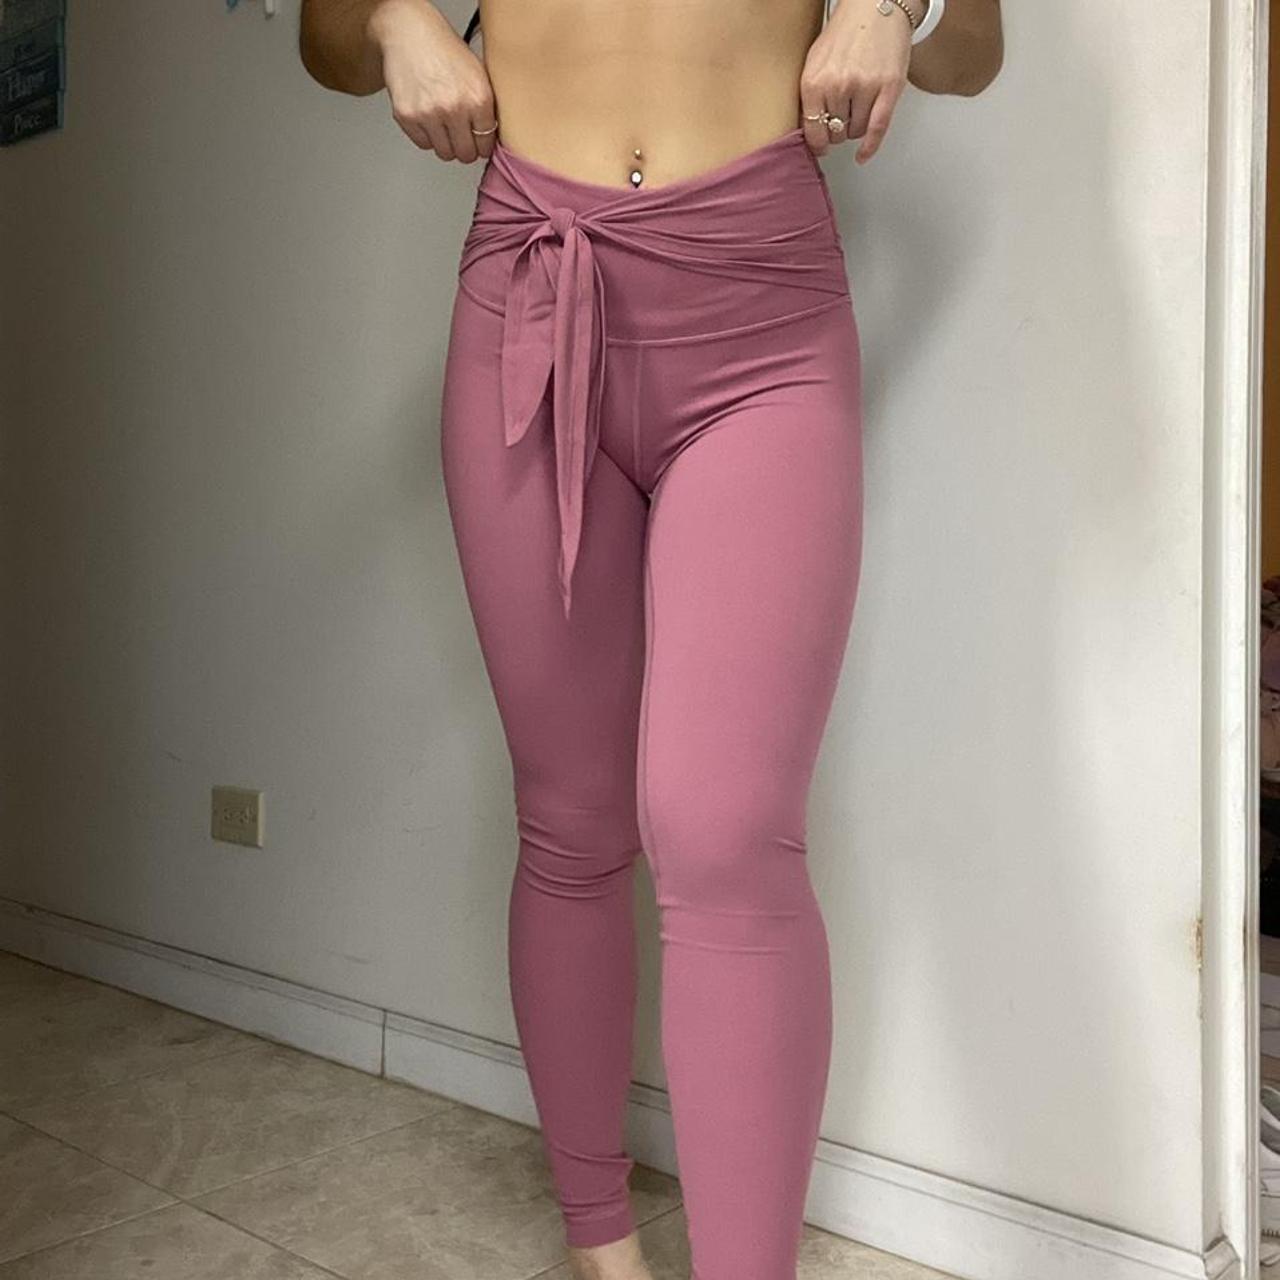 Lululemon Align Pant Colors